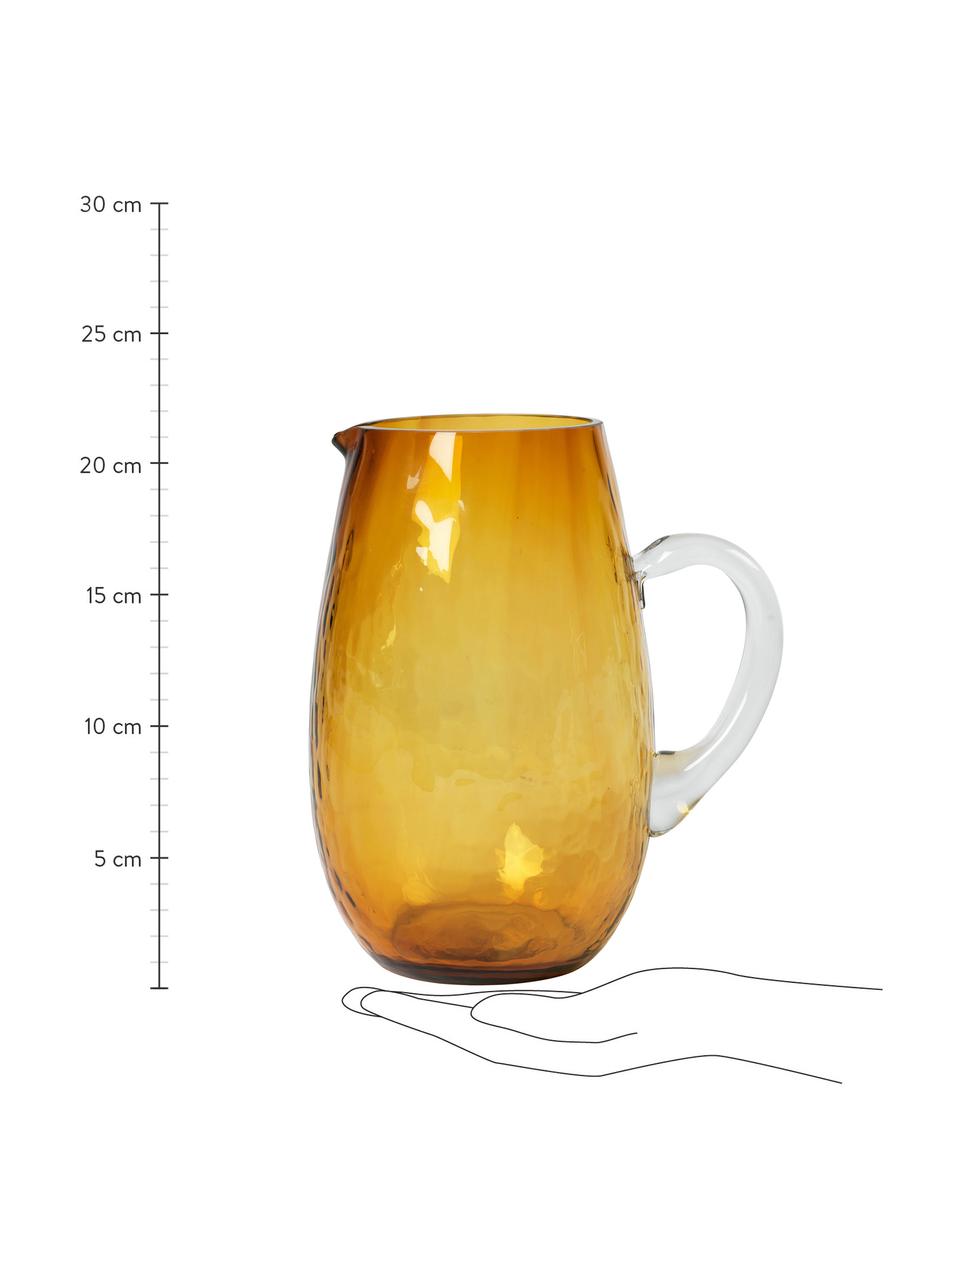 Großer mundgeblasener Krug Hammered mit gehämmerter Oberfläche, 2 L, Glas, Bernsteinfarben, Ø 14 x H 22 cm